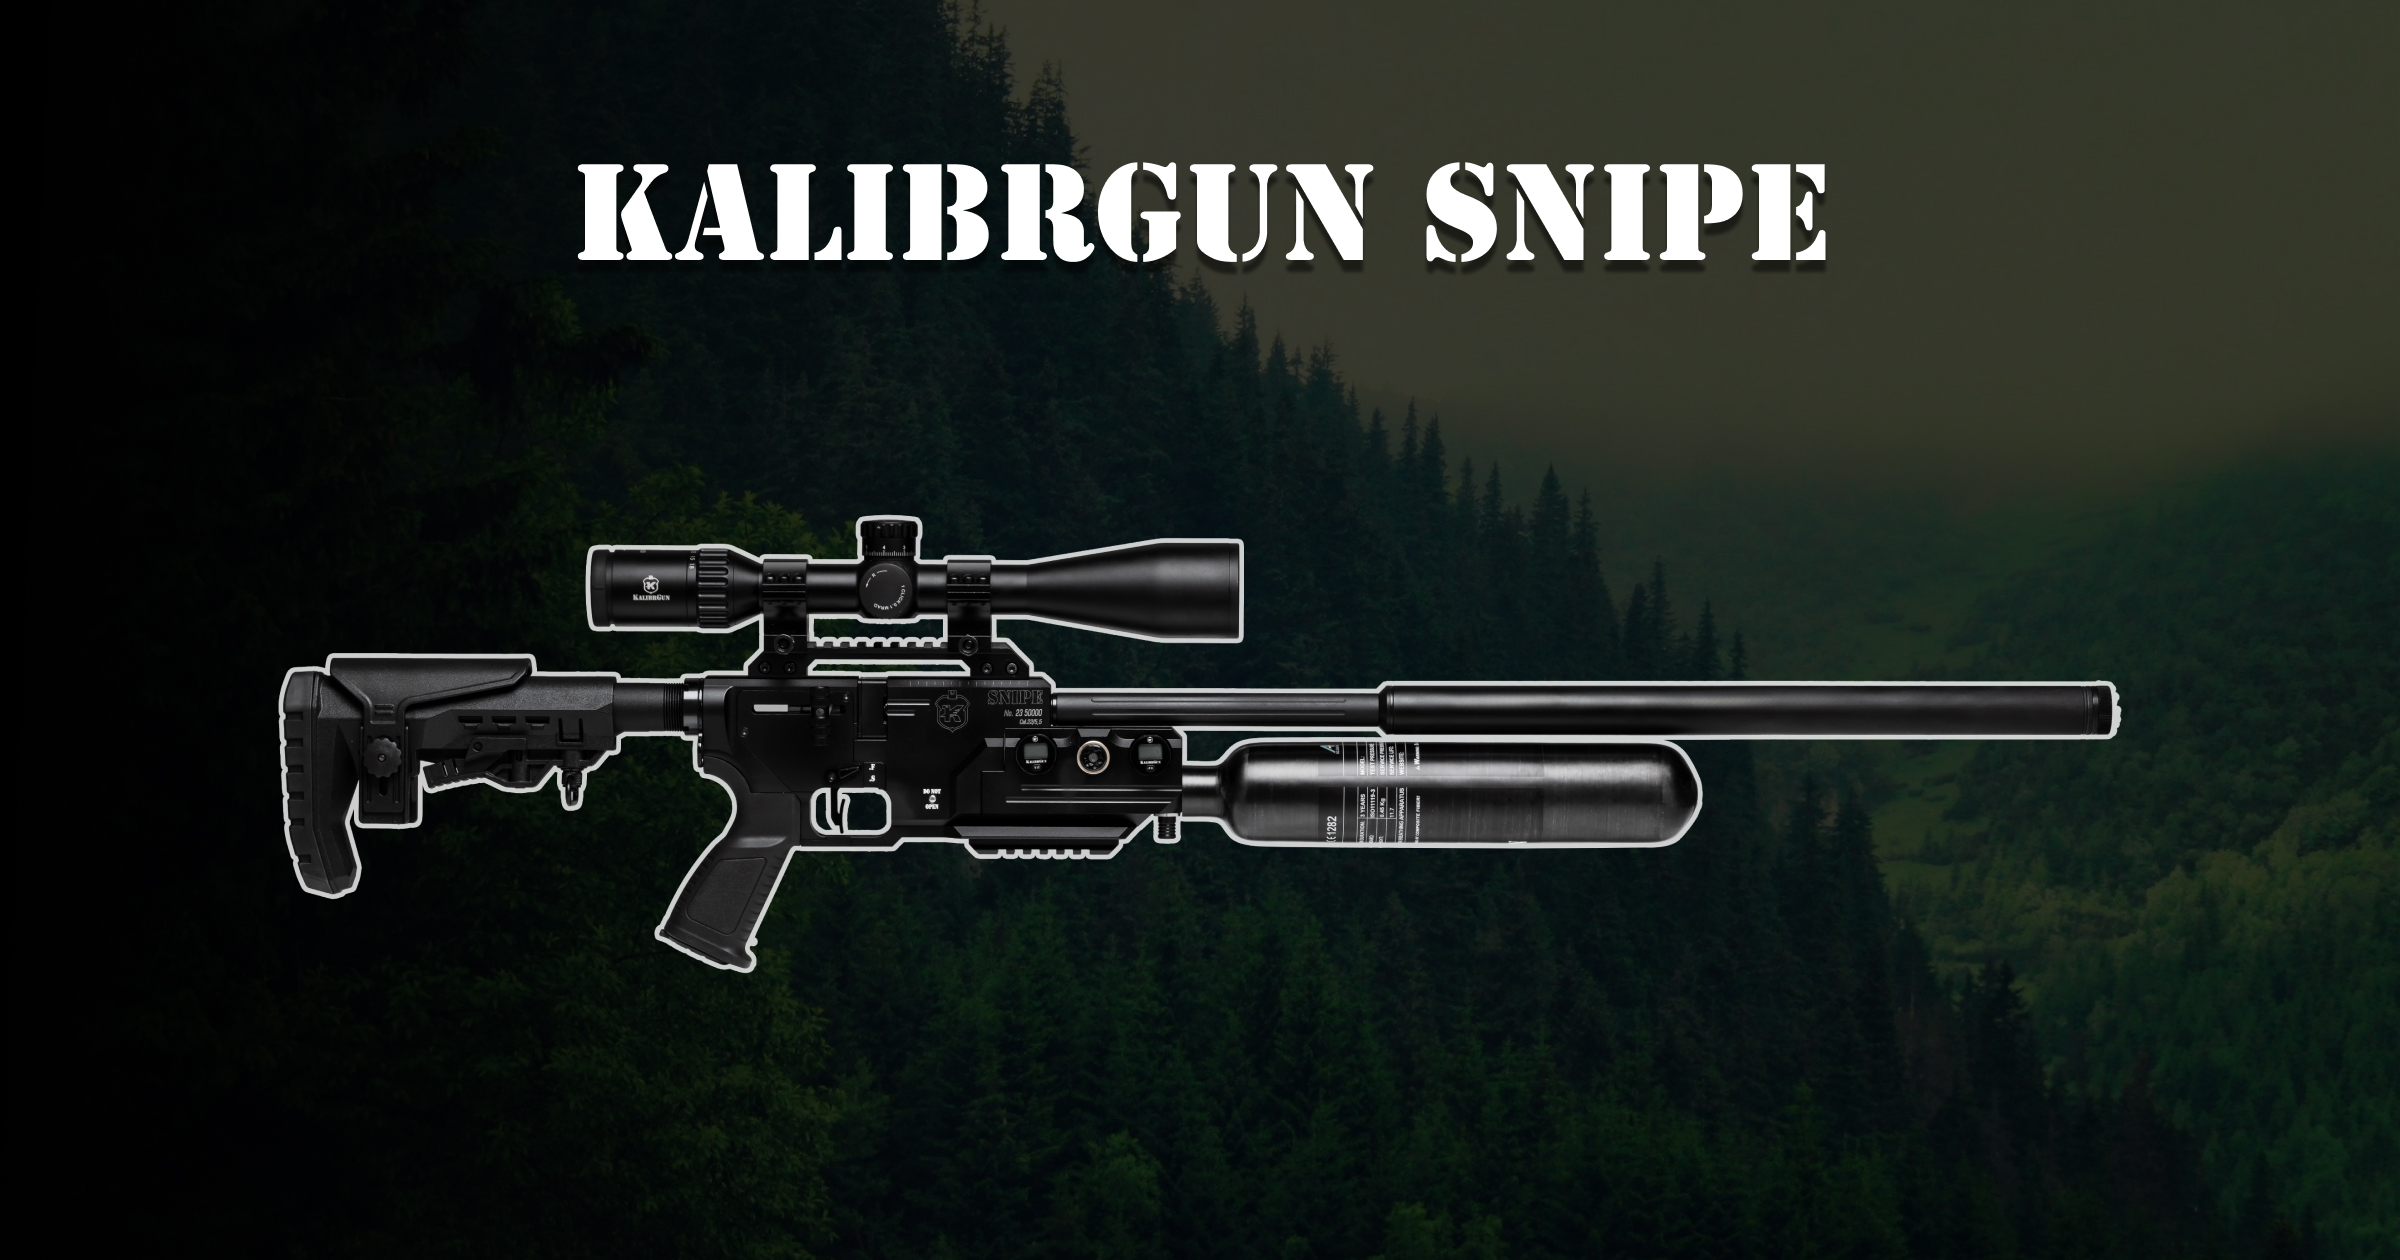 Kalibrgun Snipe 1200x630.jpg